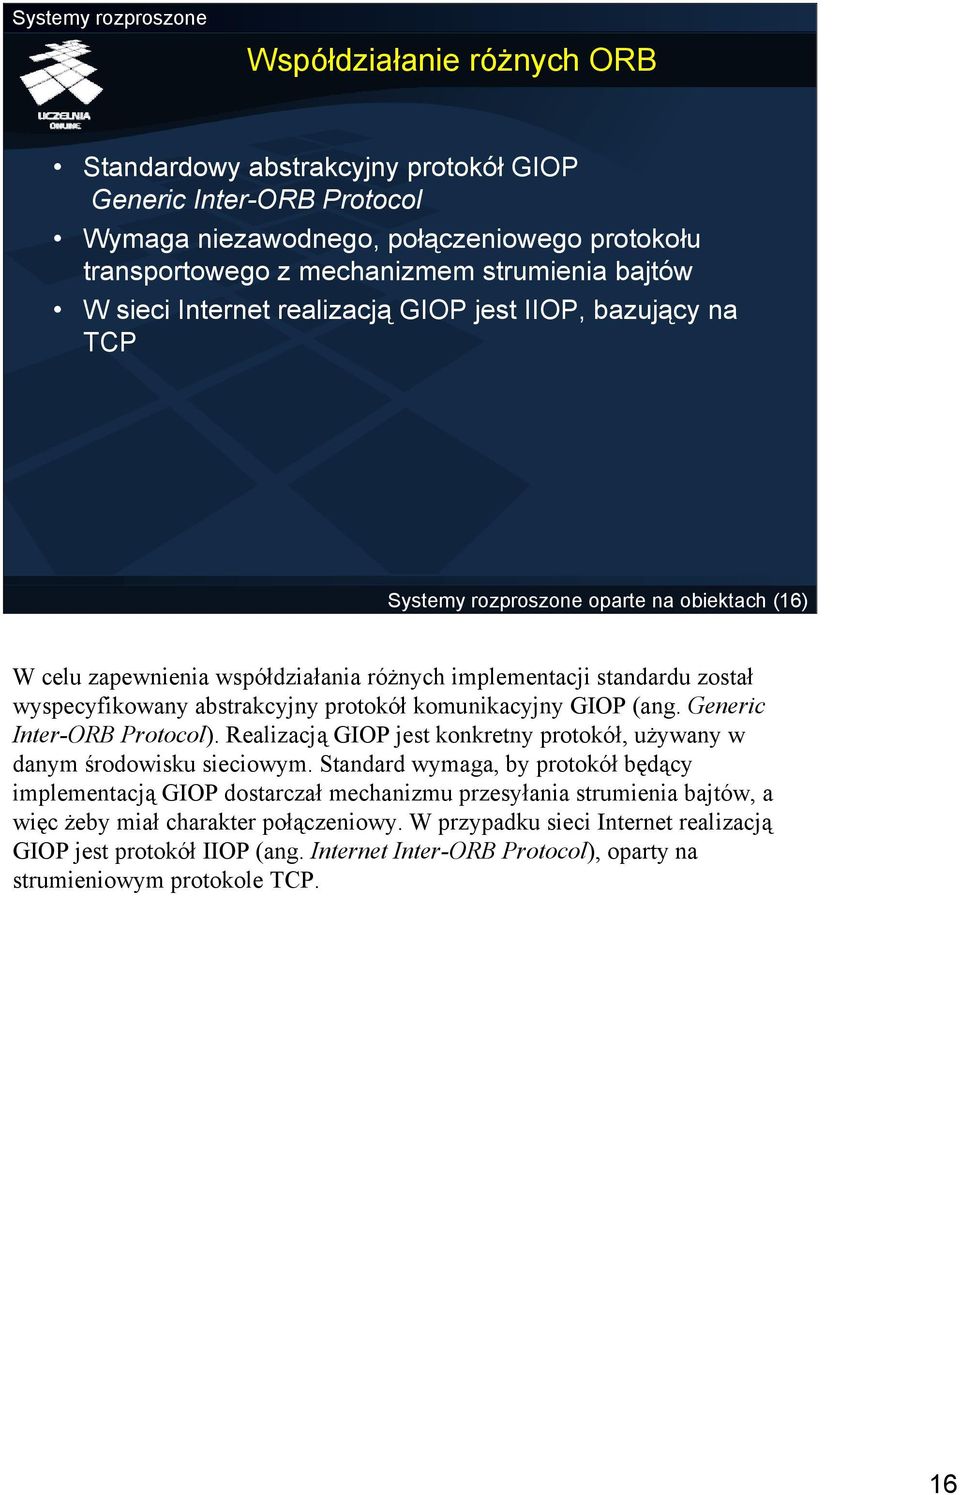 protokół komunikacyjny GIOP (ang. Generic Inter-ORB Protocol). Realizacją GIOP jest konkretny protokół, używany w danym środowisku sieciowym.